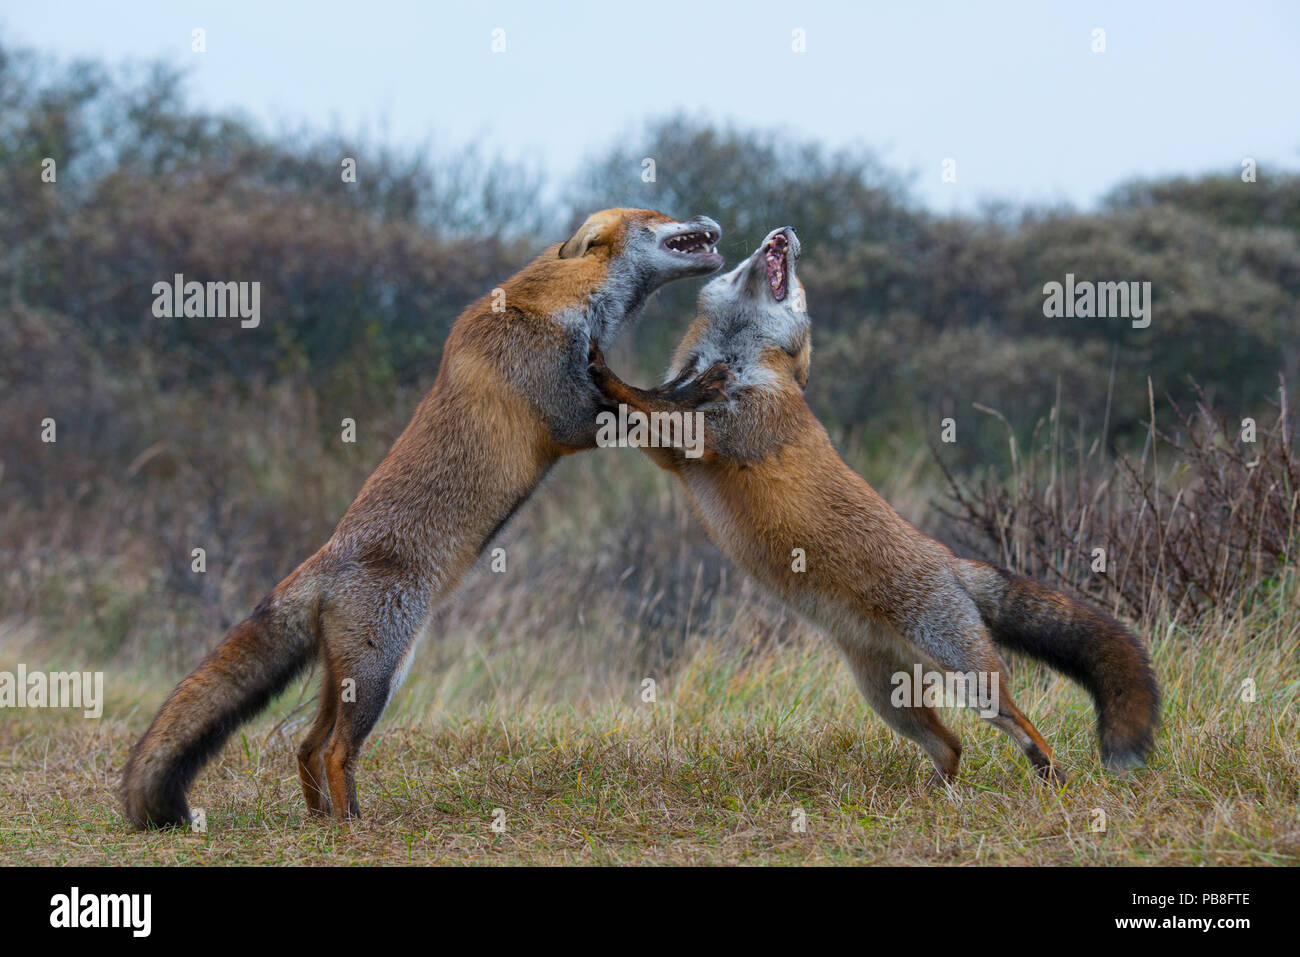 Deux renards roux (Vulpes vulpes), Combats Waterleidingduinen Amsterdamse, près de Zandvoort, Pays-Bas, novembre. Banque D'Images